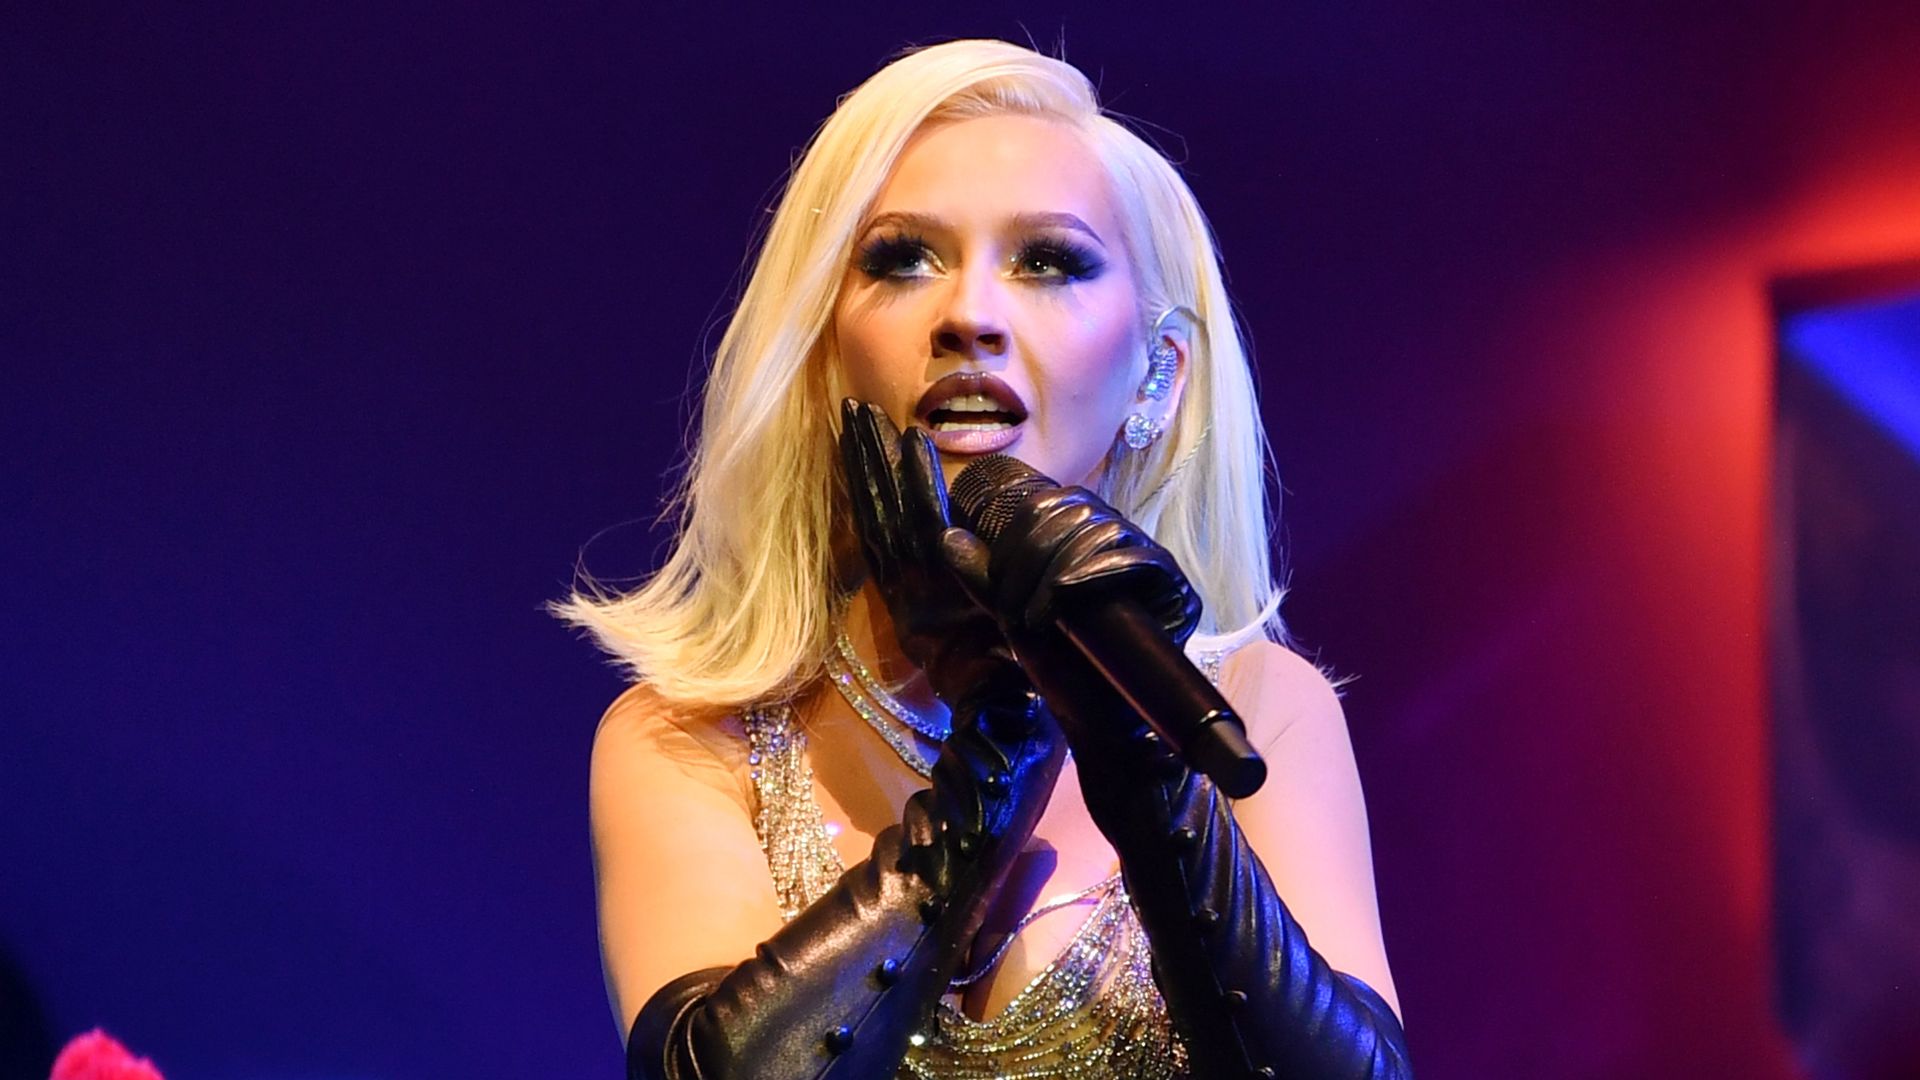 Métamorphosée, Christina Aguilera met le feu à Las Vegas! Portail des